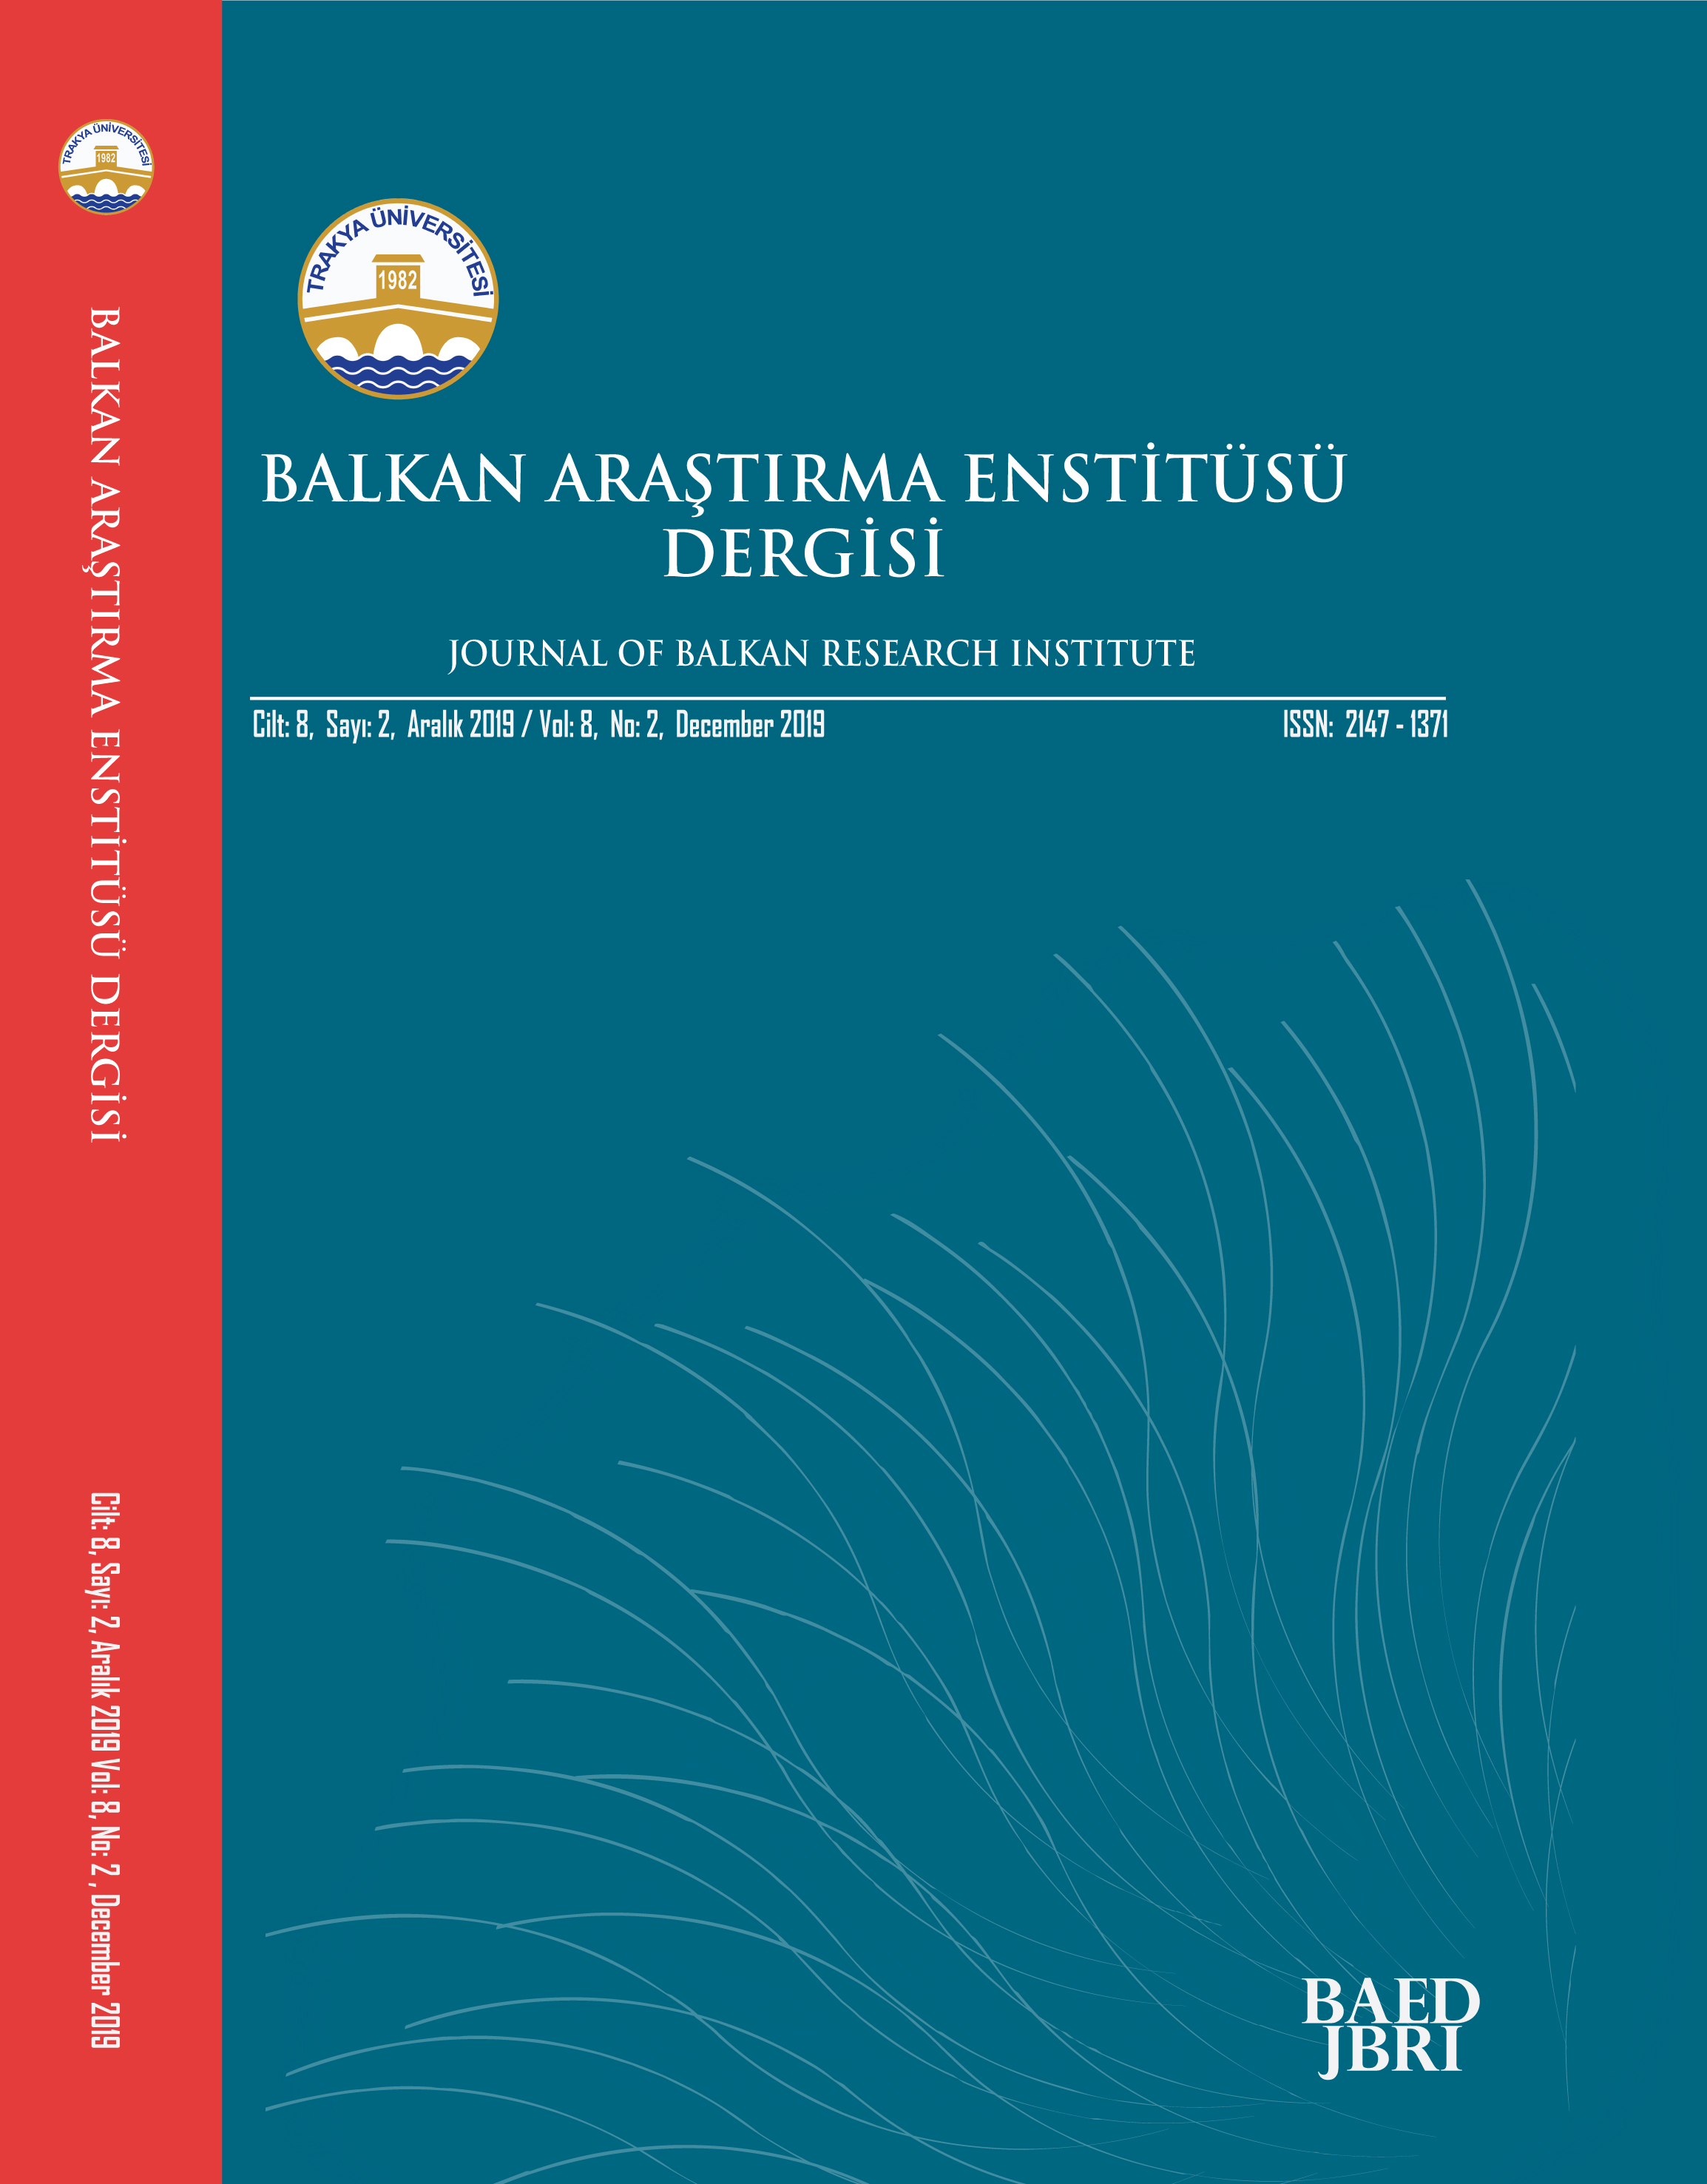 Book Review: Ahmet Önal, Kanunî’nin Son Seferi (Sigetvar 1566), Yeditepe Yayınları, İstanbul 2019, 408 sayfa, ISBN: 978-605-7800-44-2. Cover Image